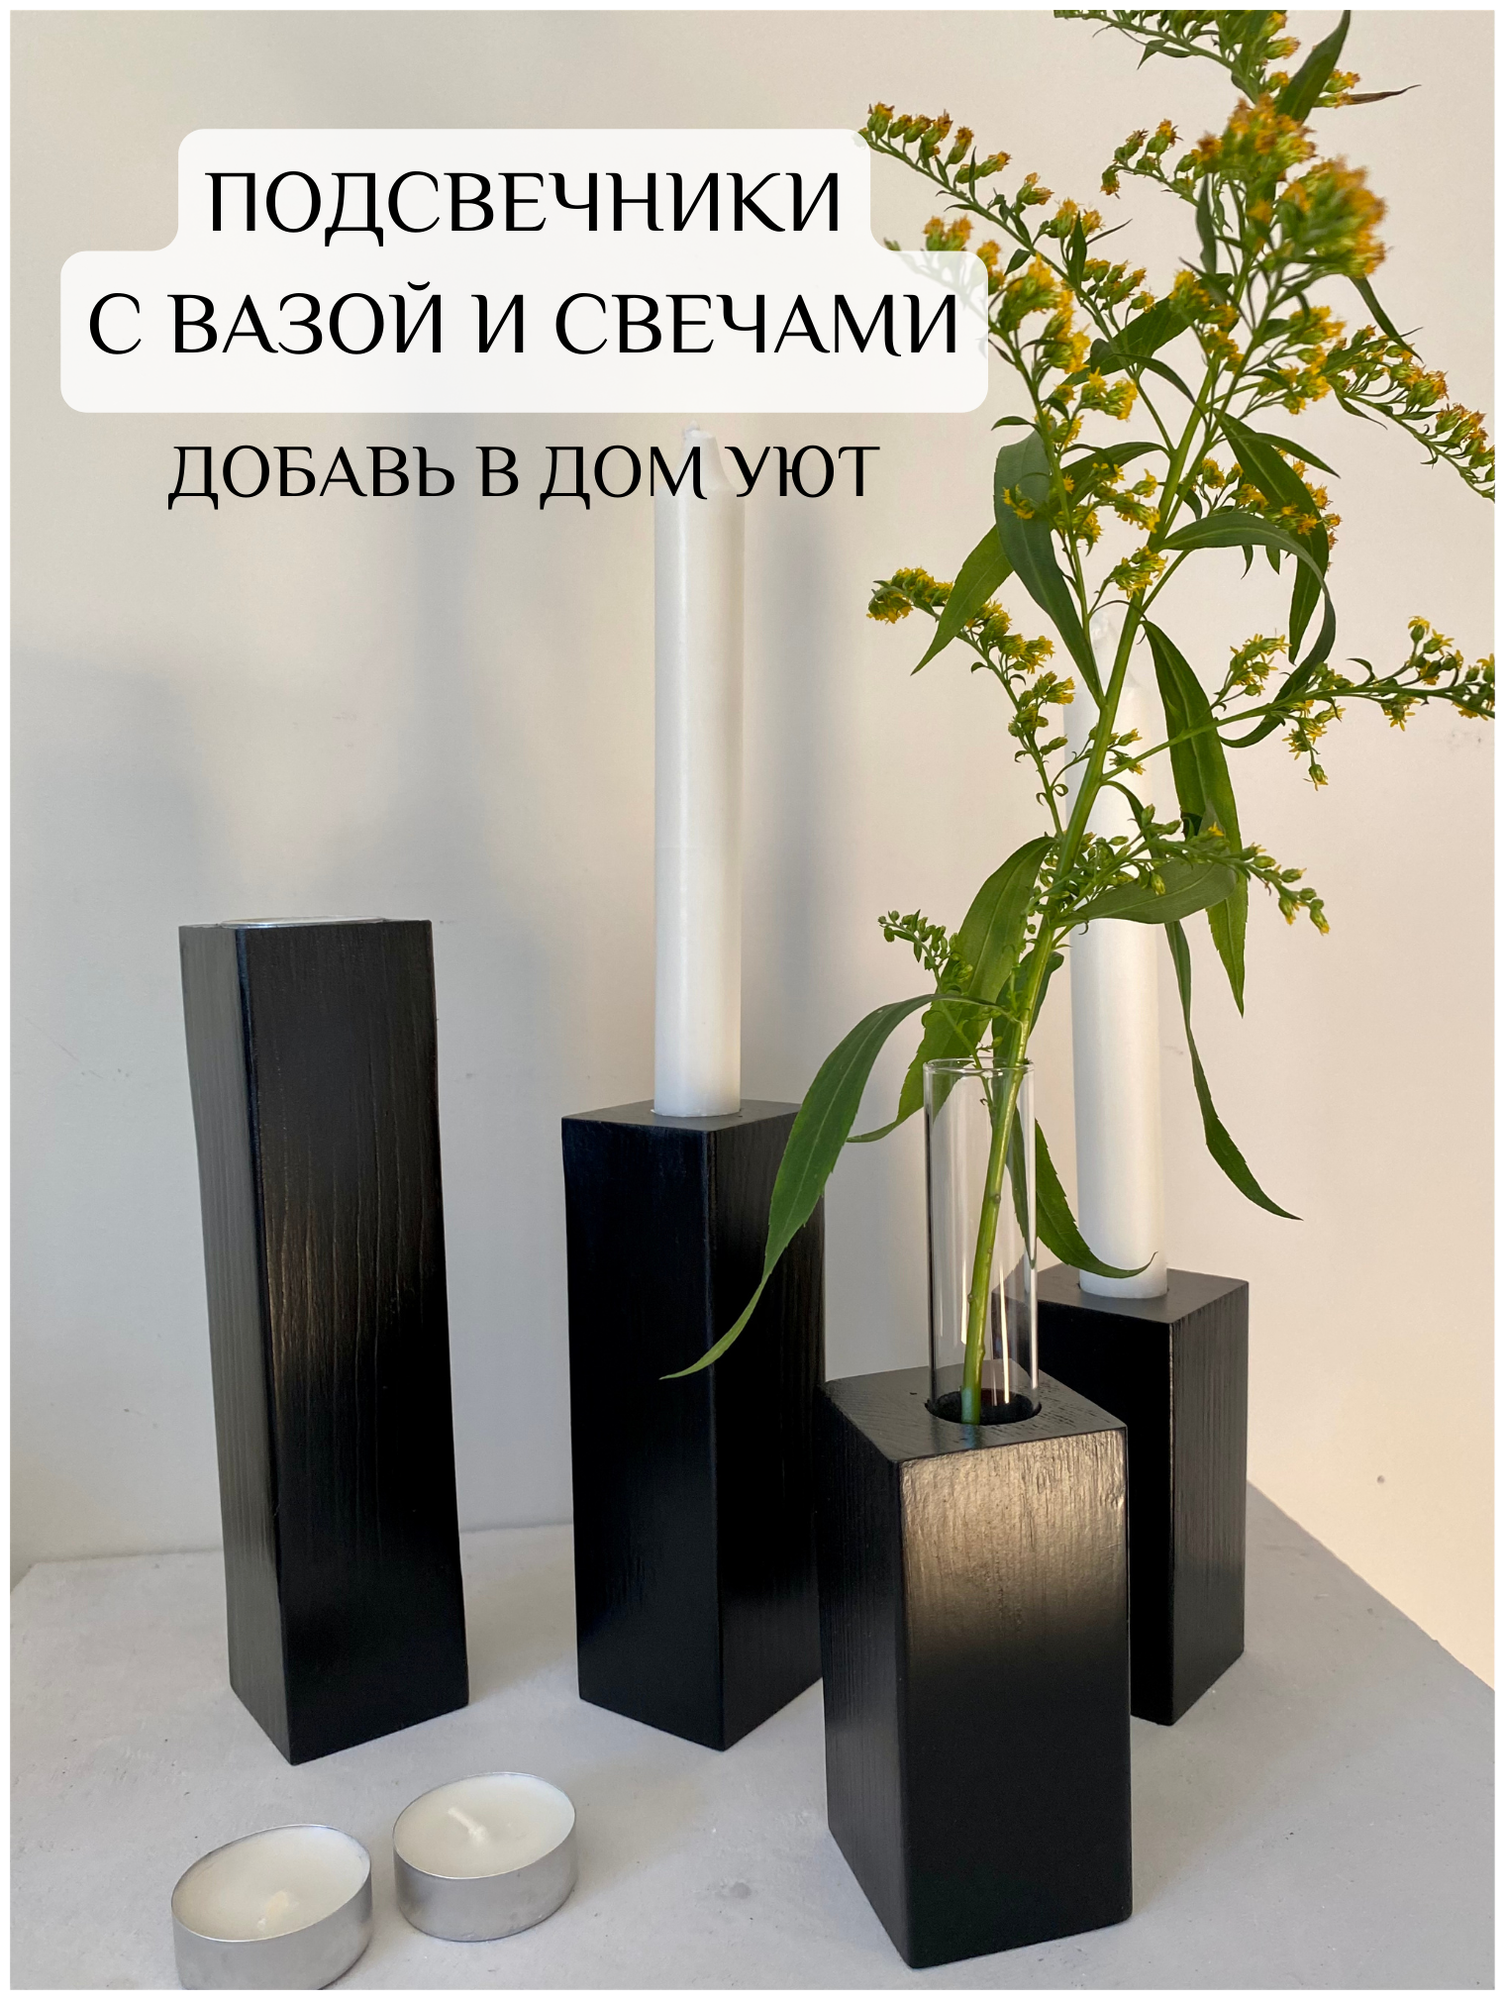 Набор деревянных подсвечников с вазой S и свечами - фотография № 1